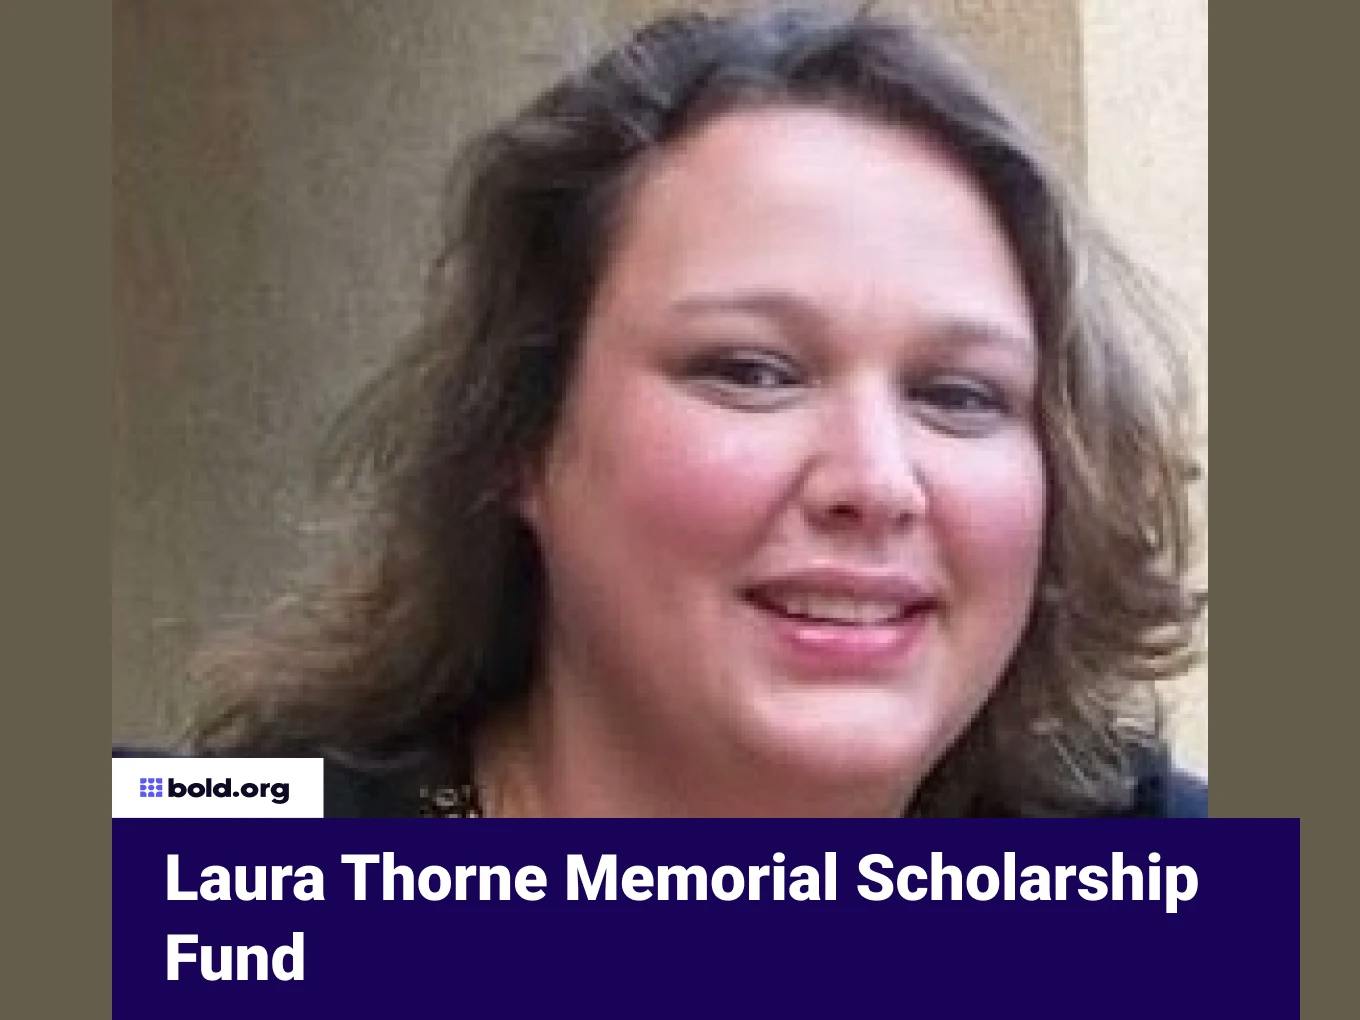 Laura Thorne Memorial Scholarship Fund